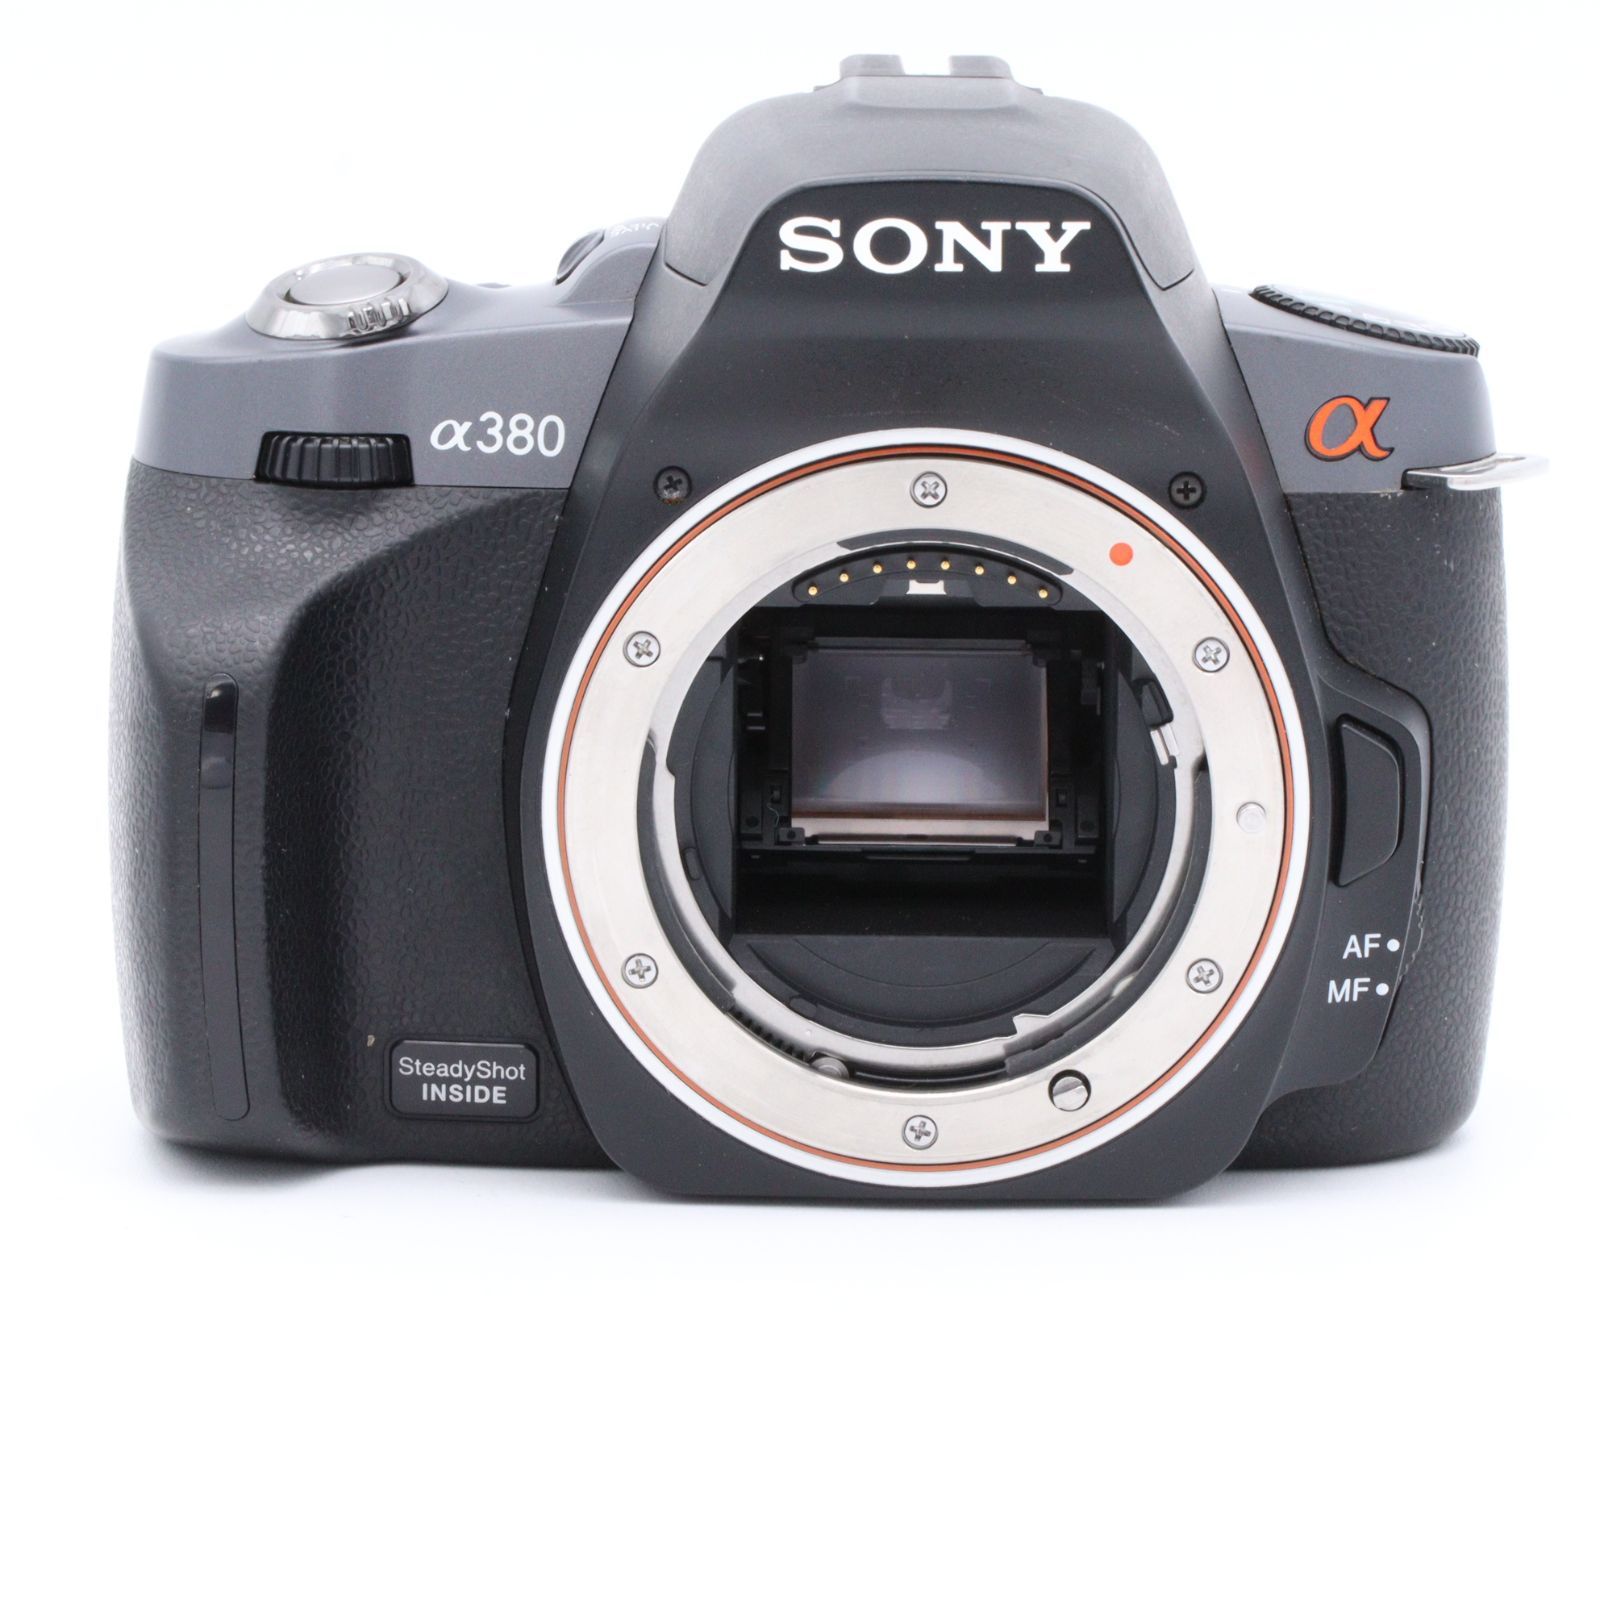 ソニー SONY デジタル一眼レフカメラ α380 (本体単品) ブラック DSLRA380